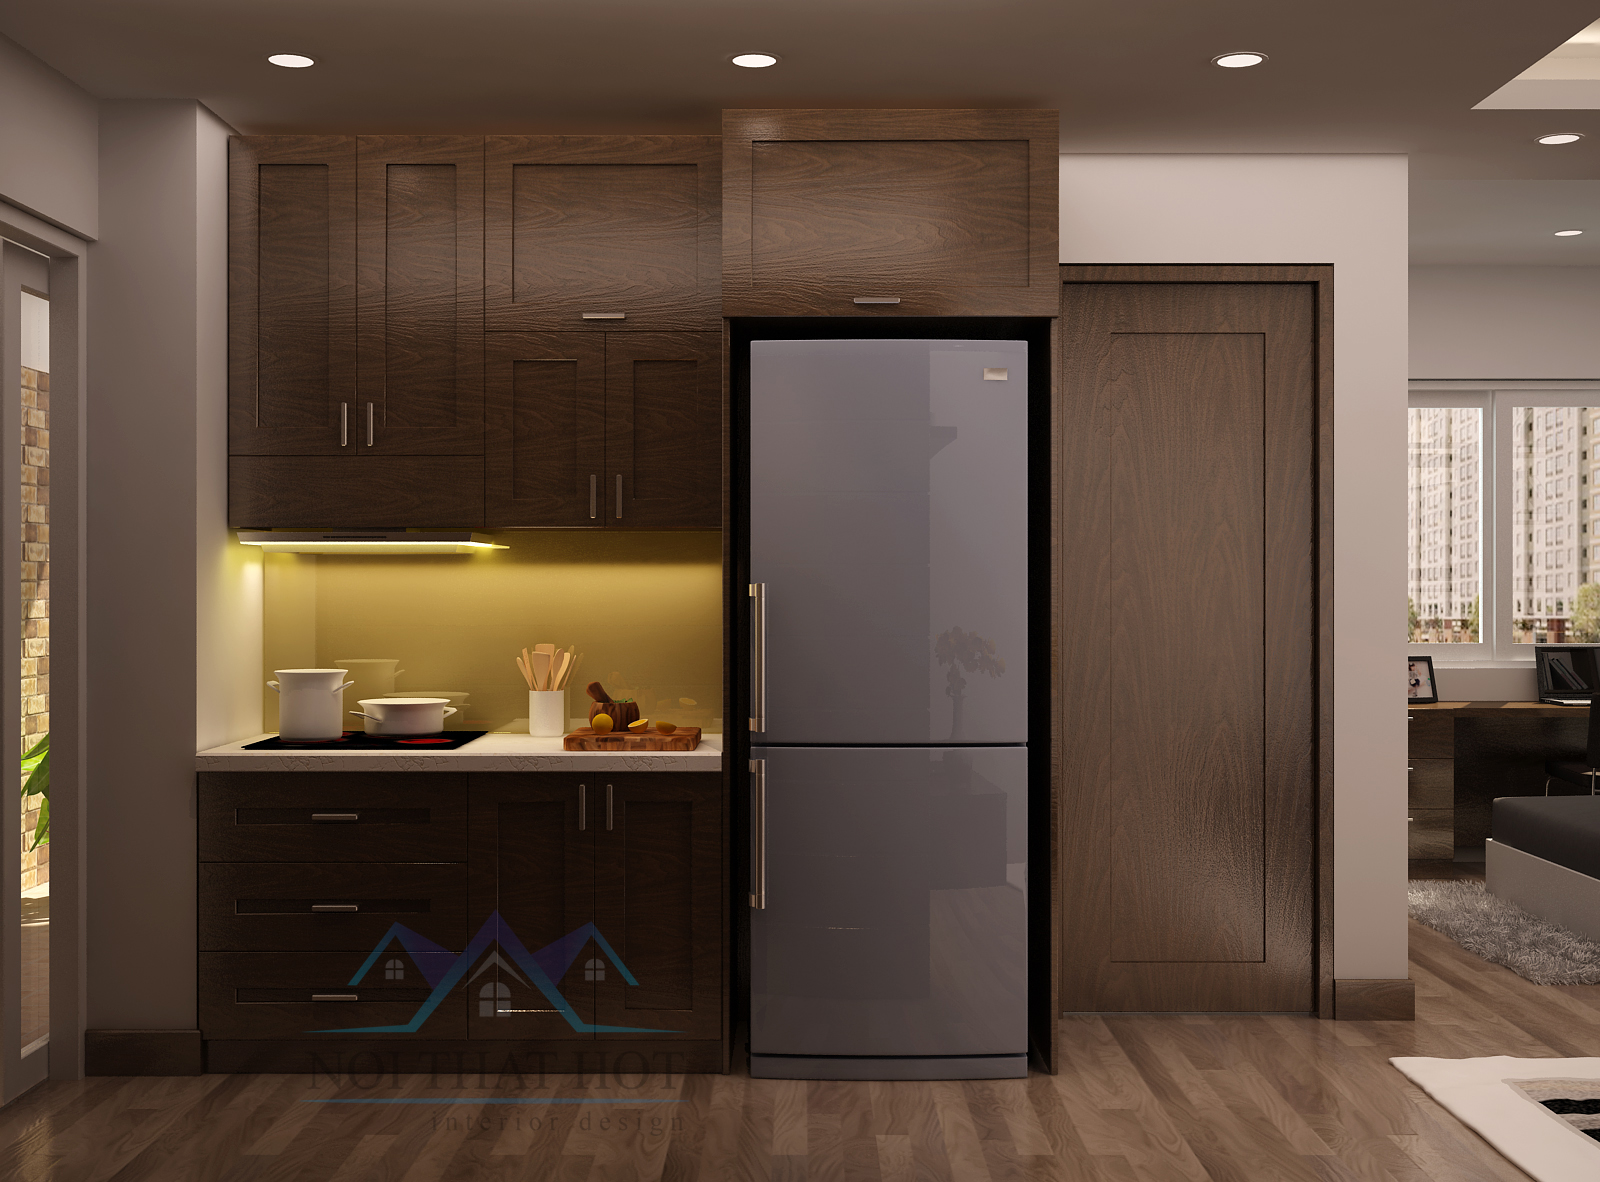 Thiết kế nội thất căn hộ chung cư phòng bếp